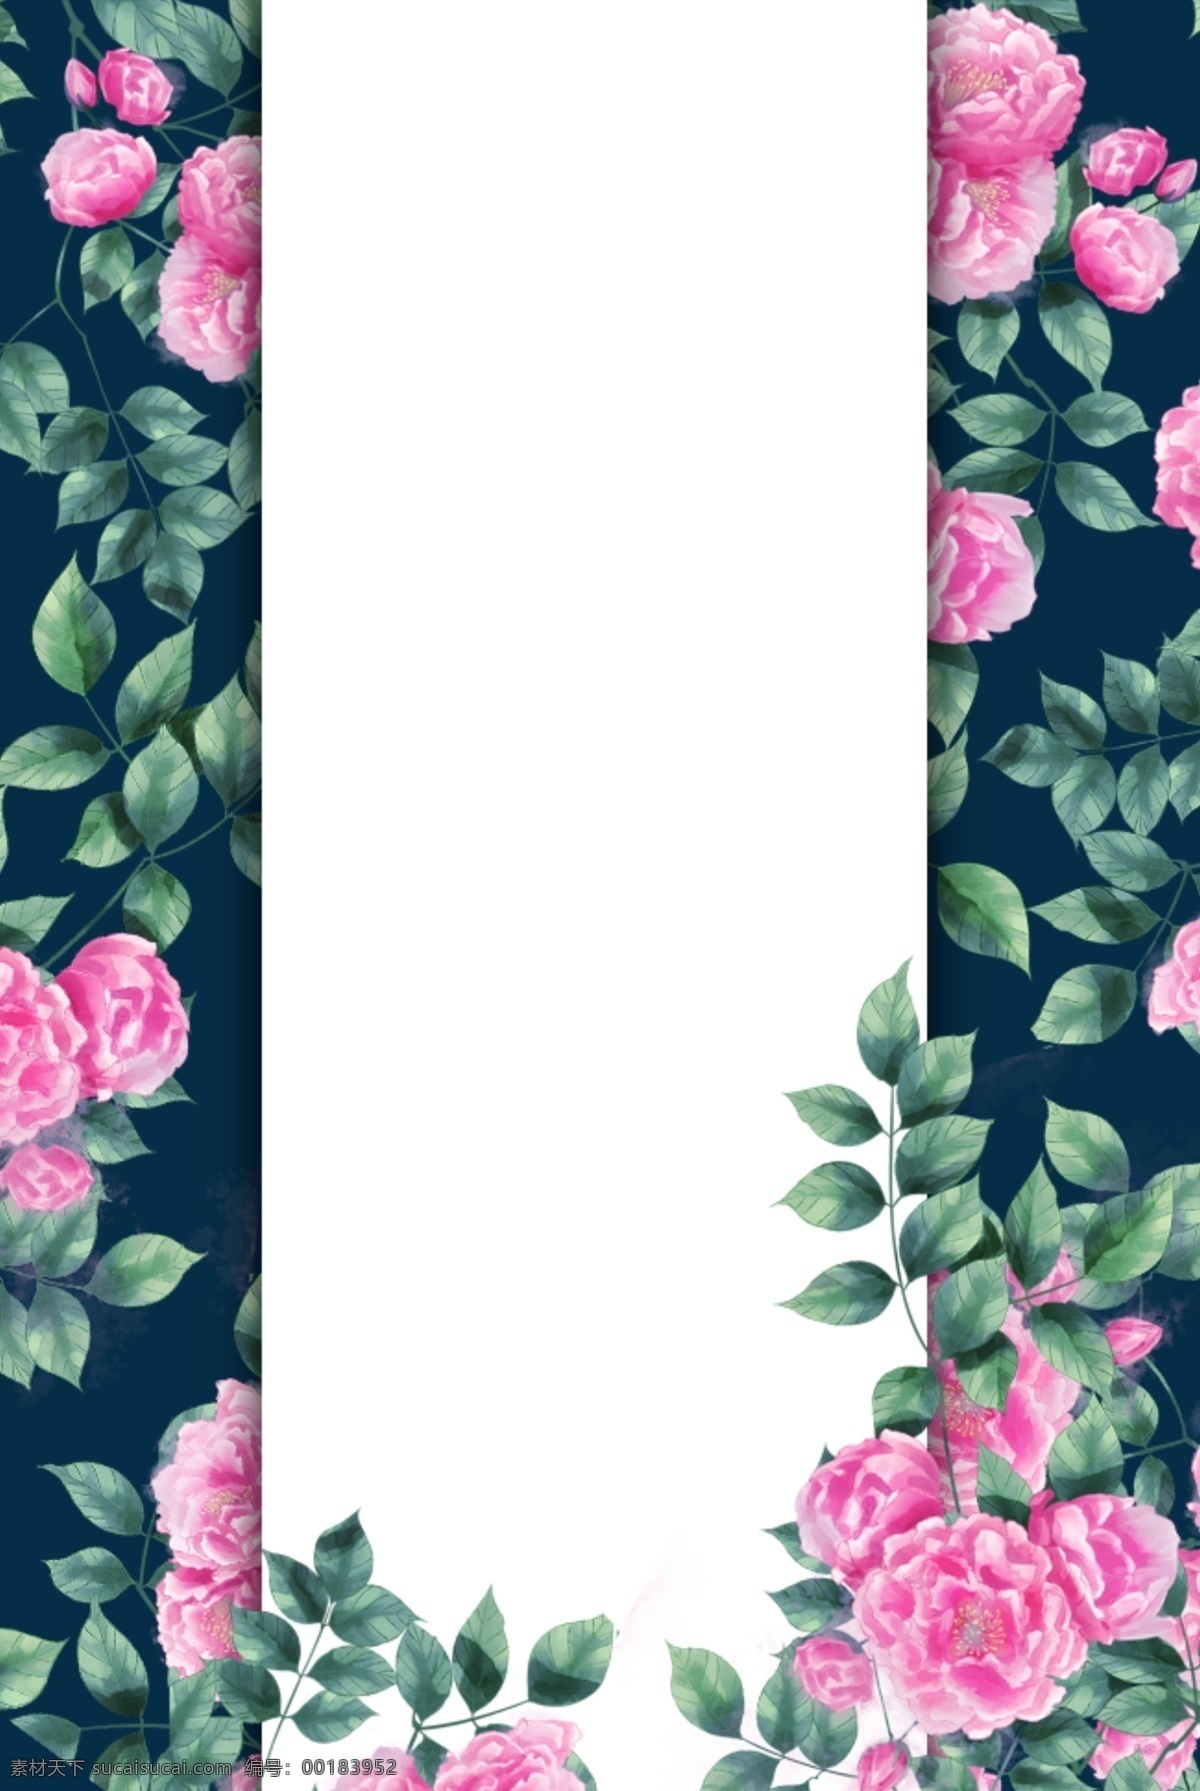 创意 时尚 新品 简约 边框 平面广告 简约边框 花卉 海报 手绘 服装 粉色